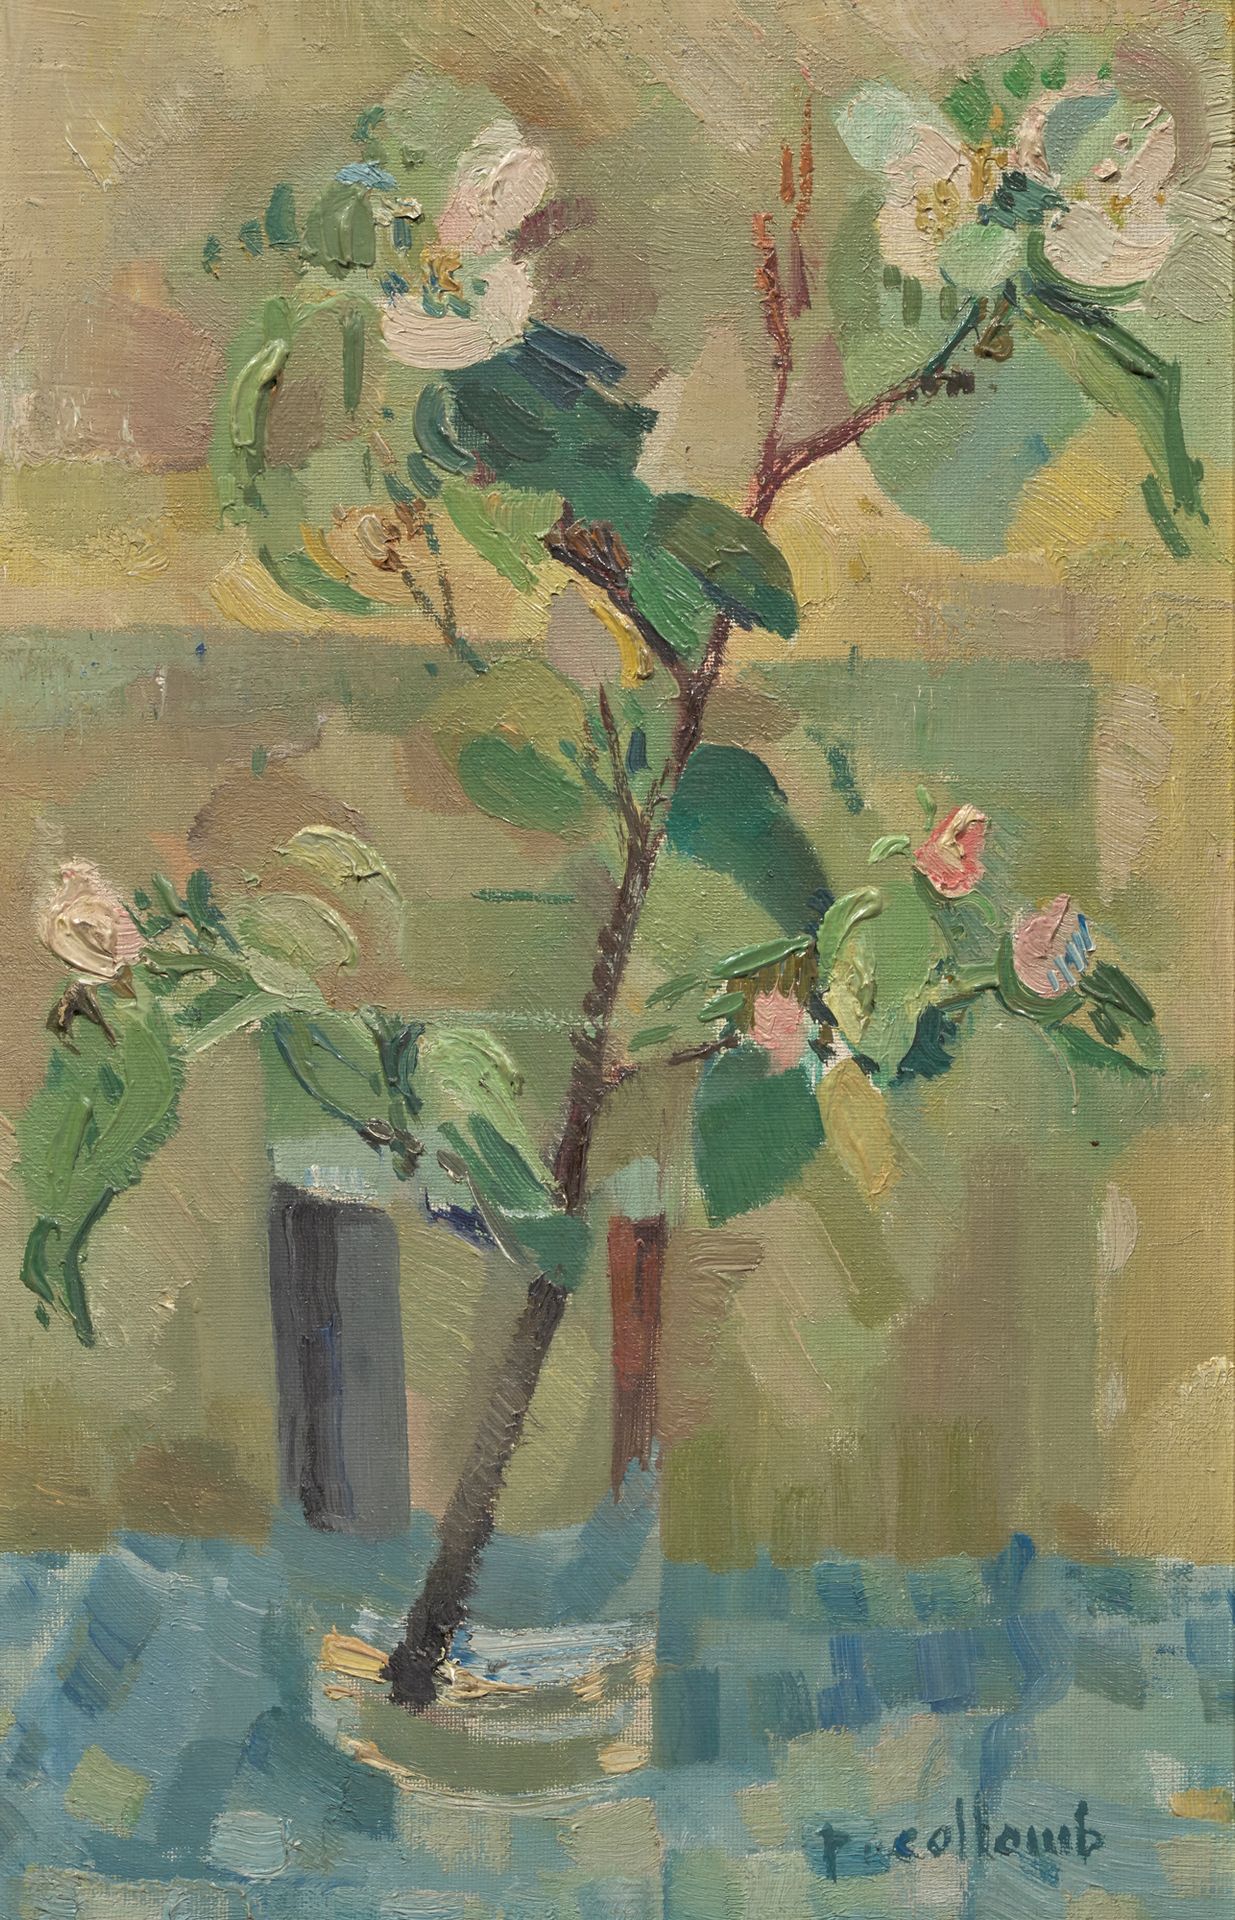 Paul COLLOMB (1821-2010) 
盛开的花瓶
布面油画，右下方签名，背面会签
41 x 27 cm